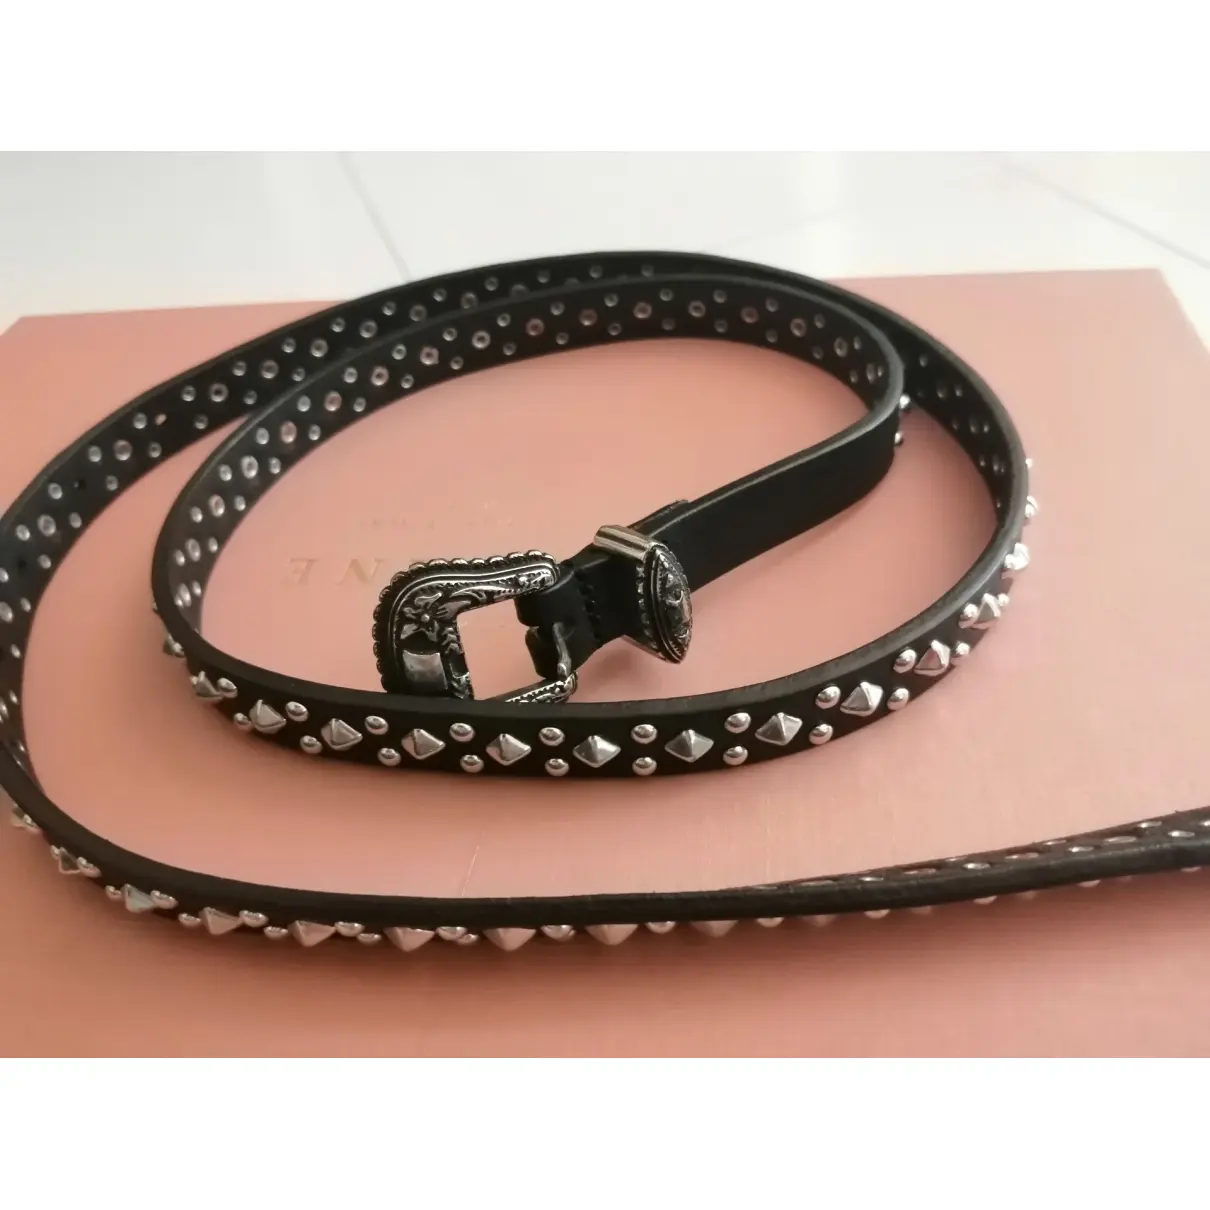 Buy The Kooples Fall Winter 2019 leather belt online